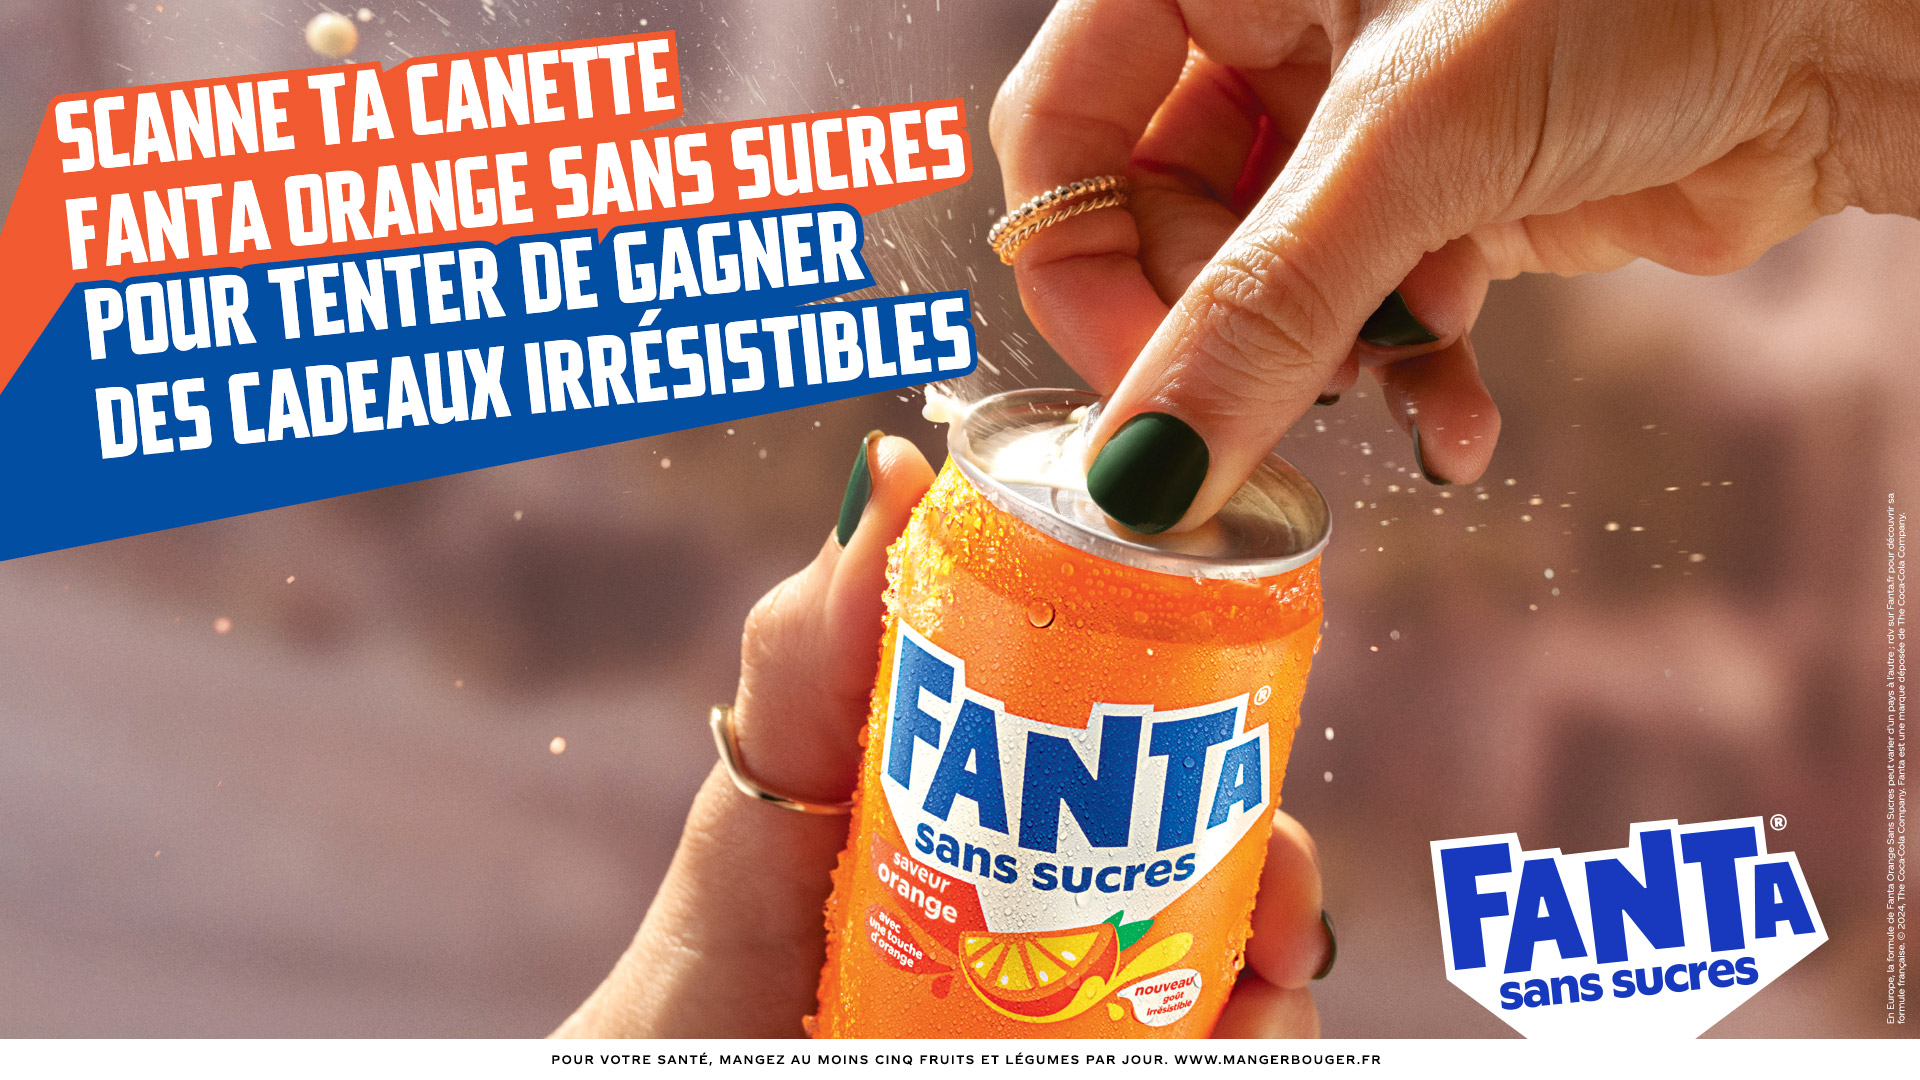 Scanne ta Cannete Fanta Orange saveur Sans Sucres pour tenter de gagner des cadeaux